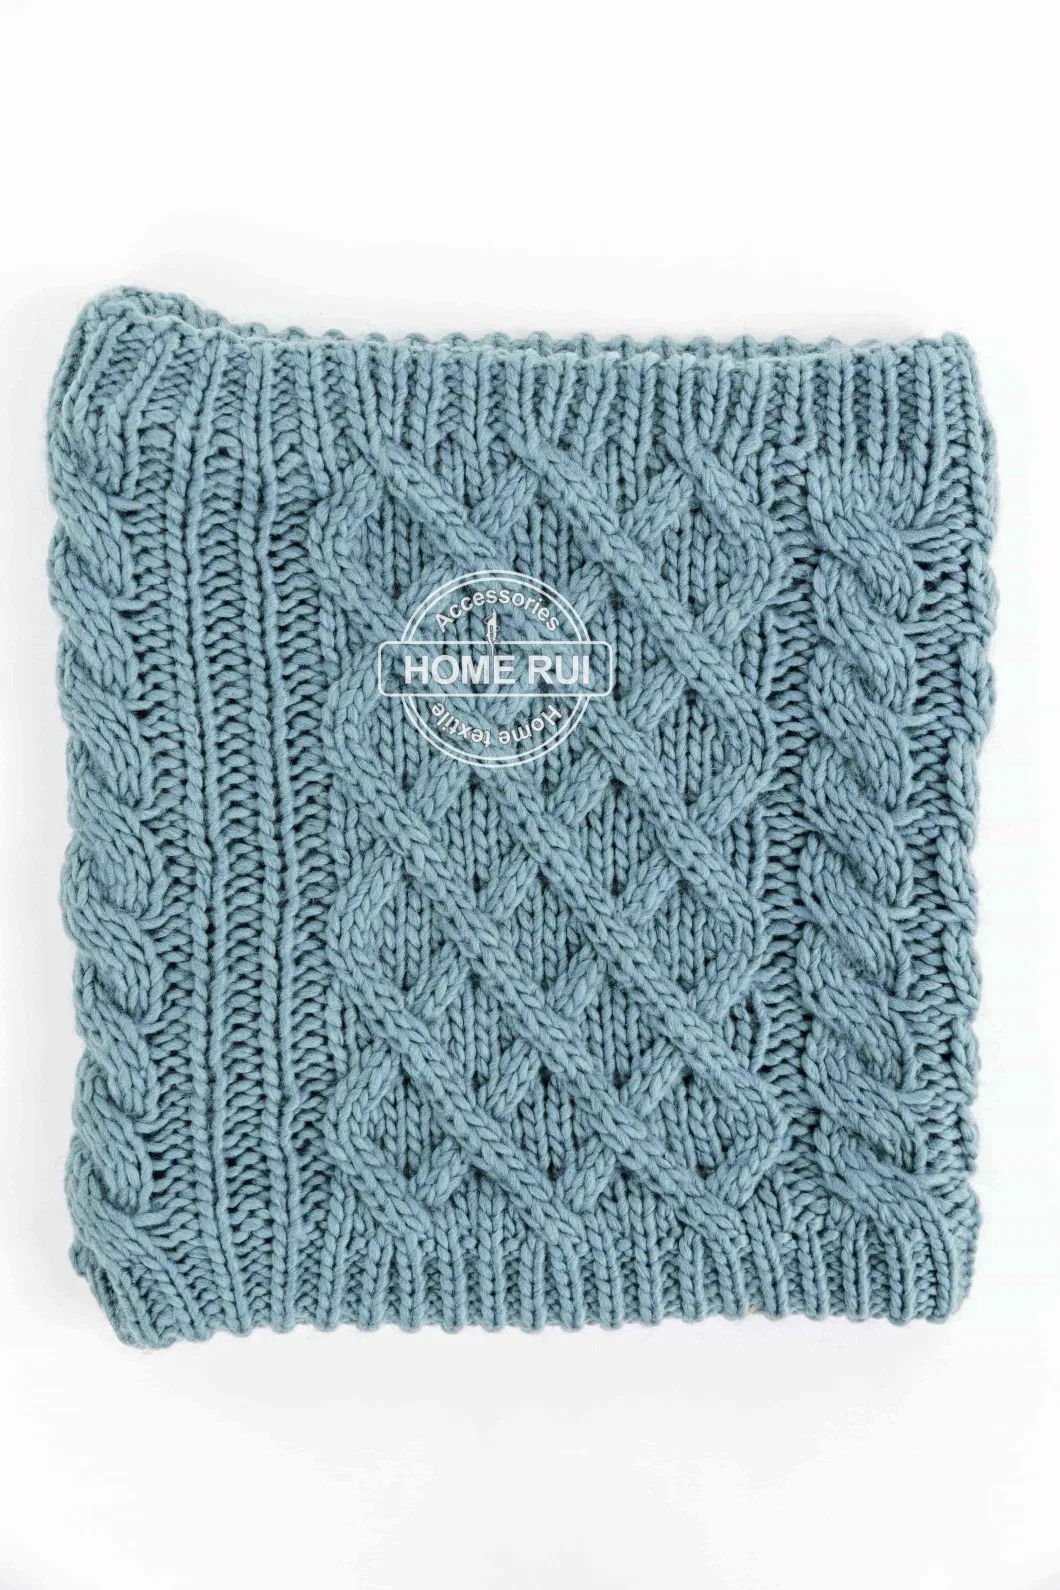 Unisex Women Ladies Beanie Scarf Winter Sets Cross Knit Cable Design Hat Cap Neck Warmer Fleece Double Layers Snood Hat Bonnet